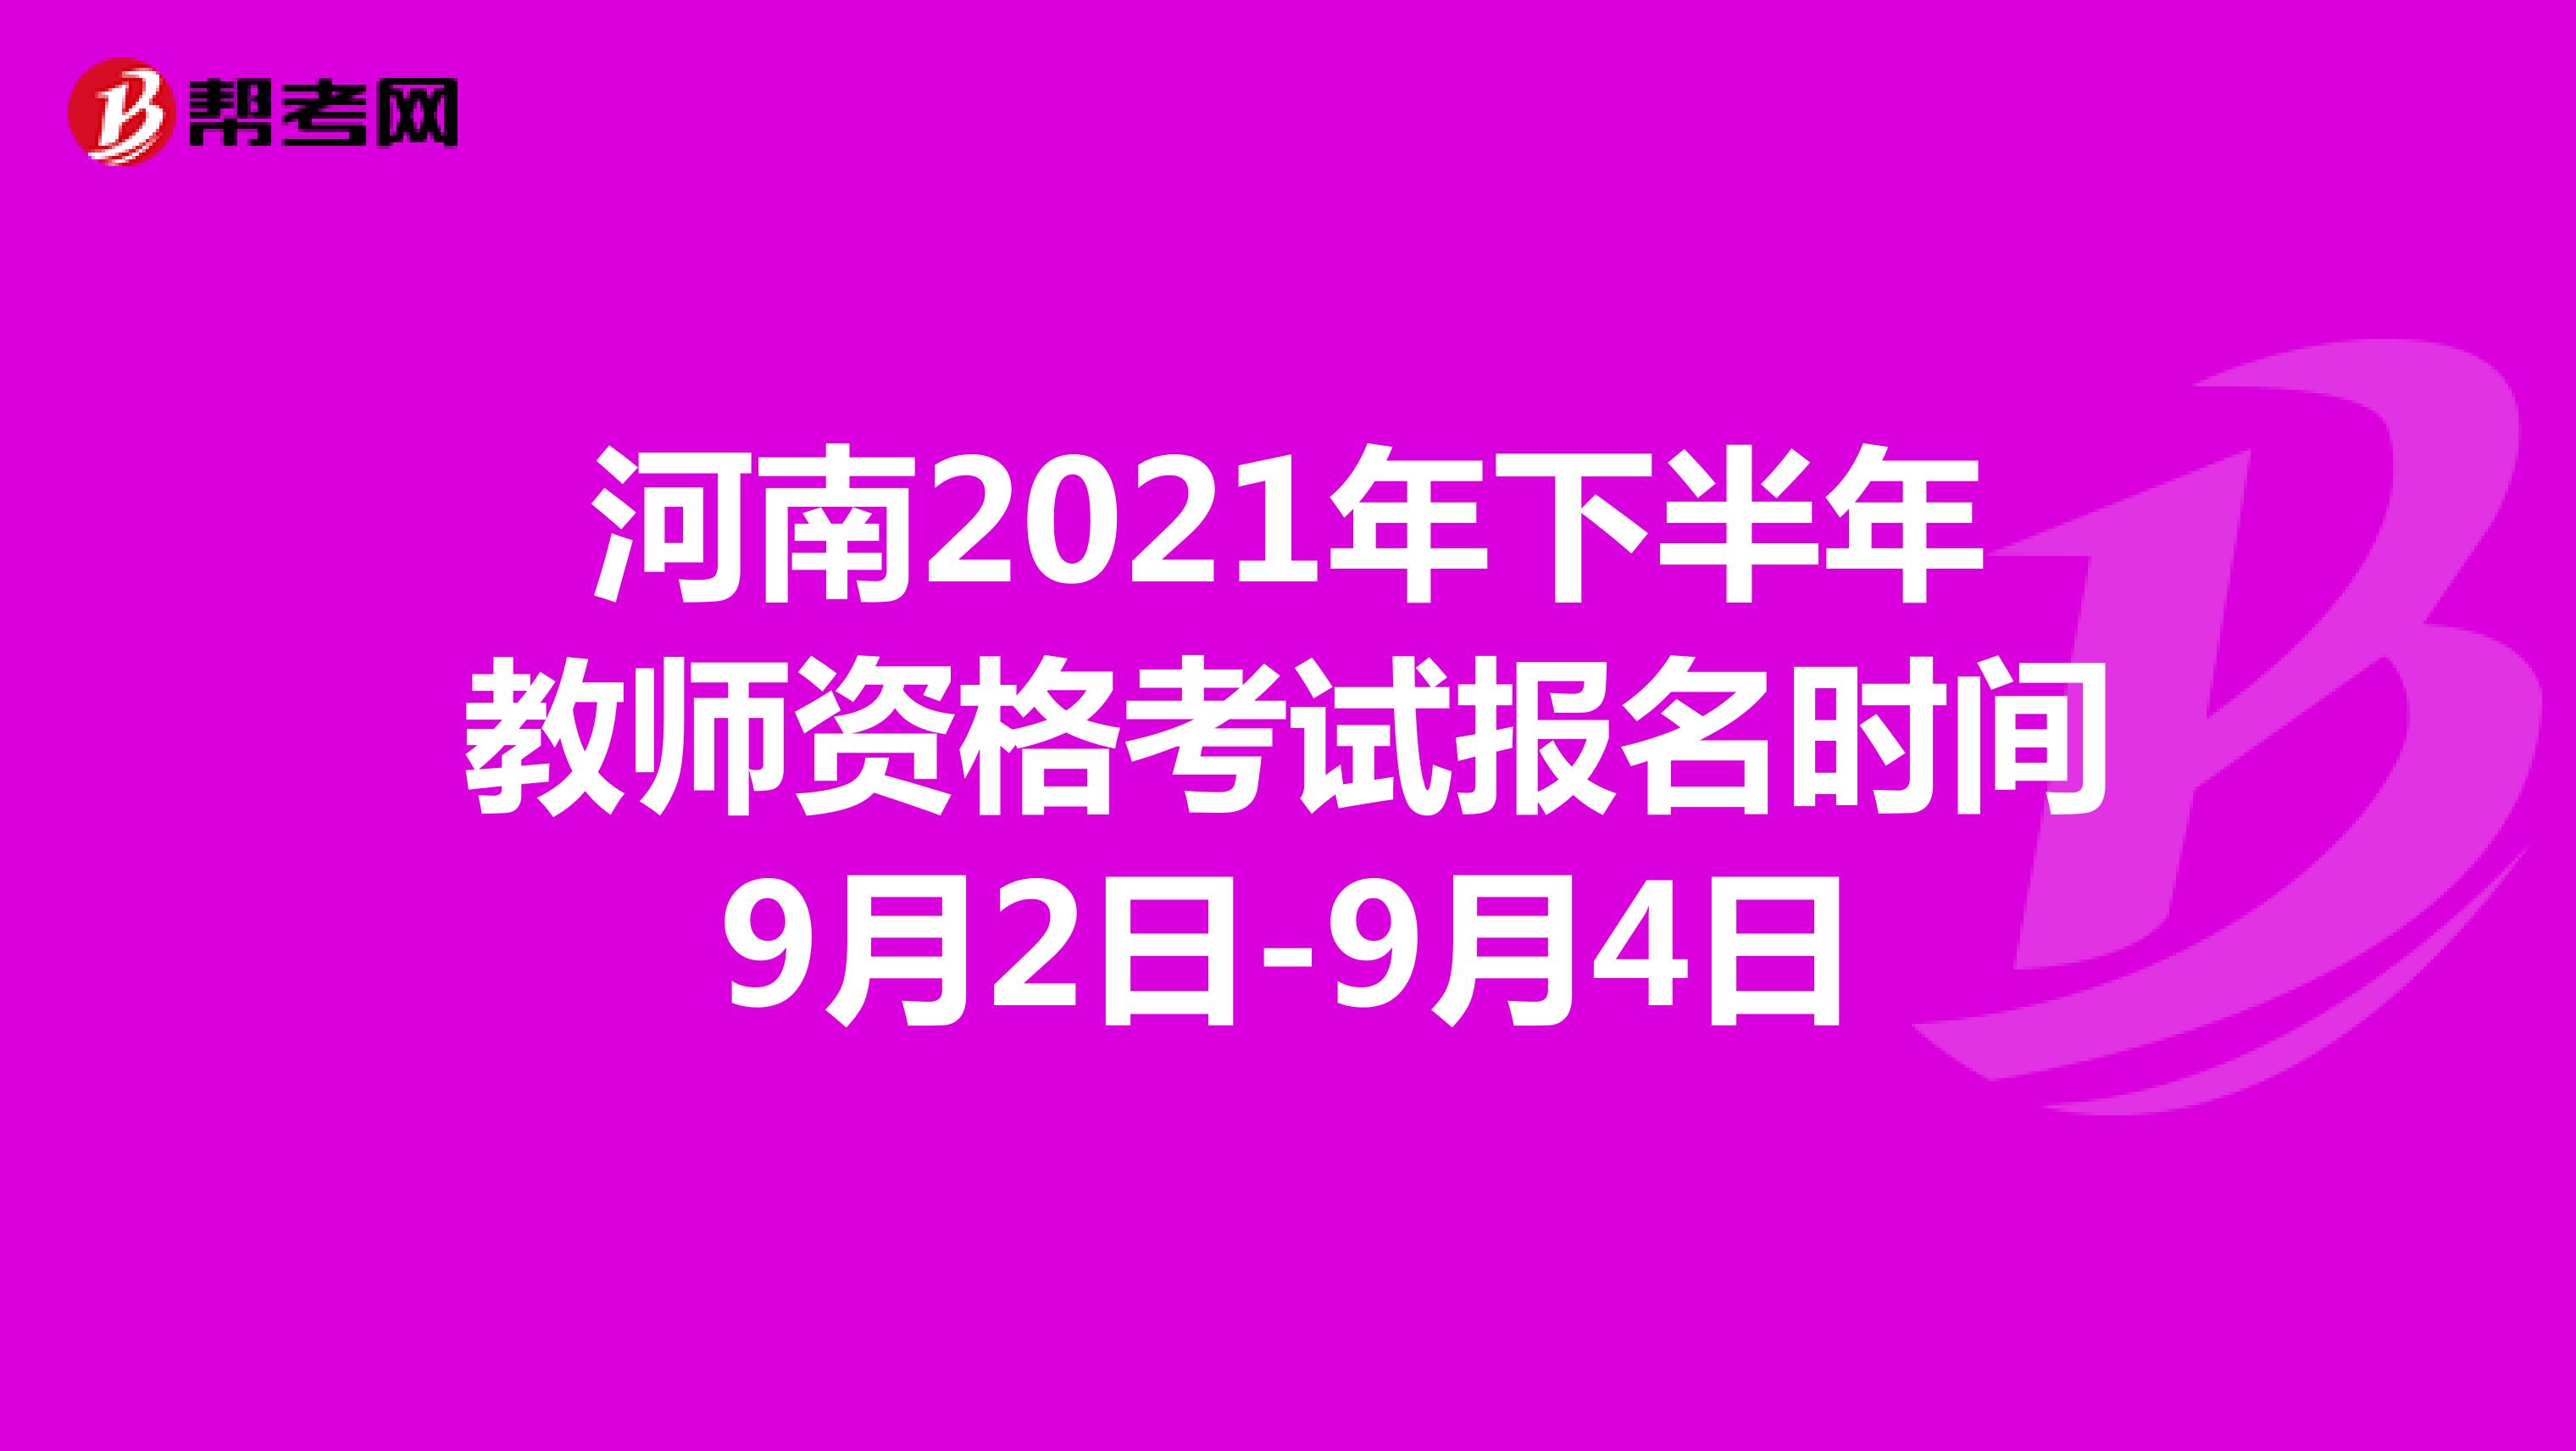 河南2021年下半年教师资格考试报名时间9月2日-9月4日